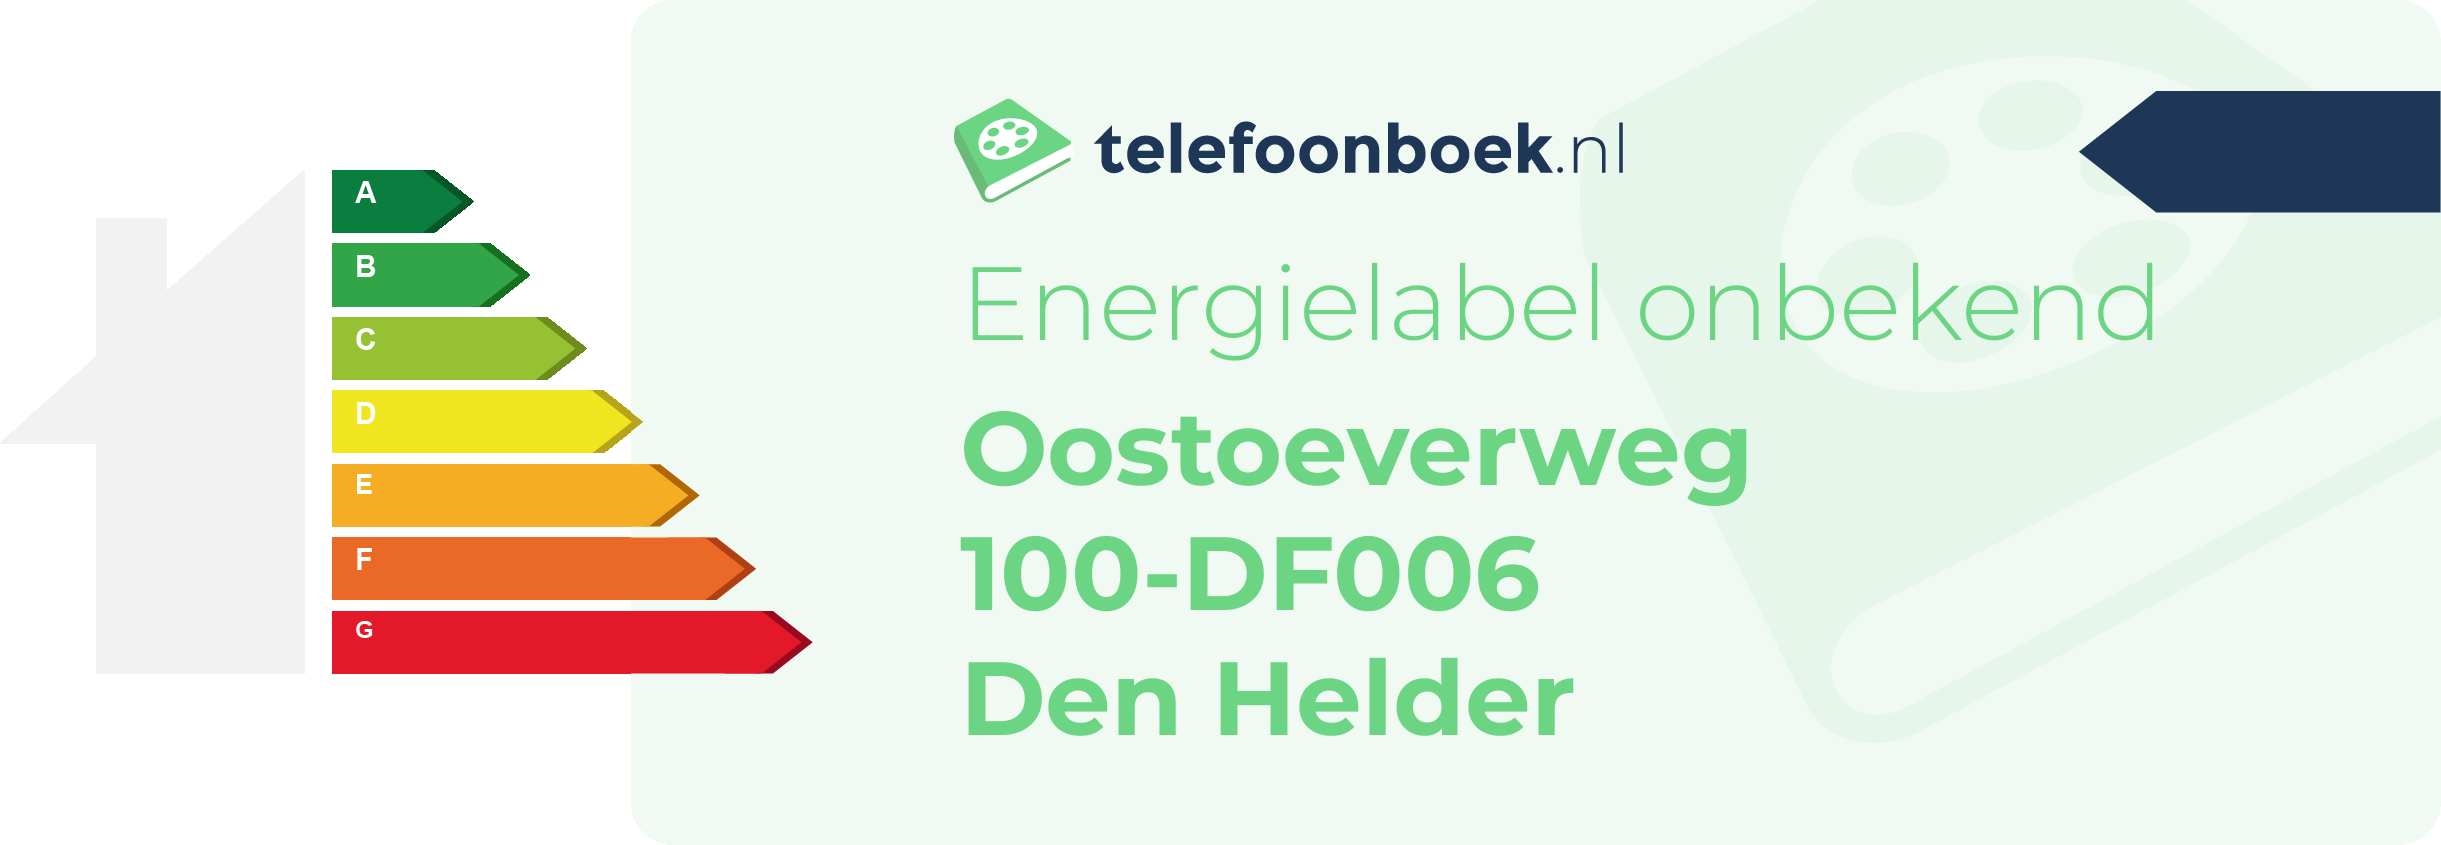 Energielabel Oostoeverweg 100-DF006 Den Helder